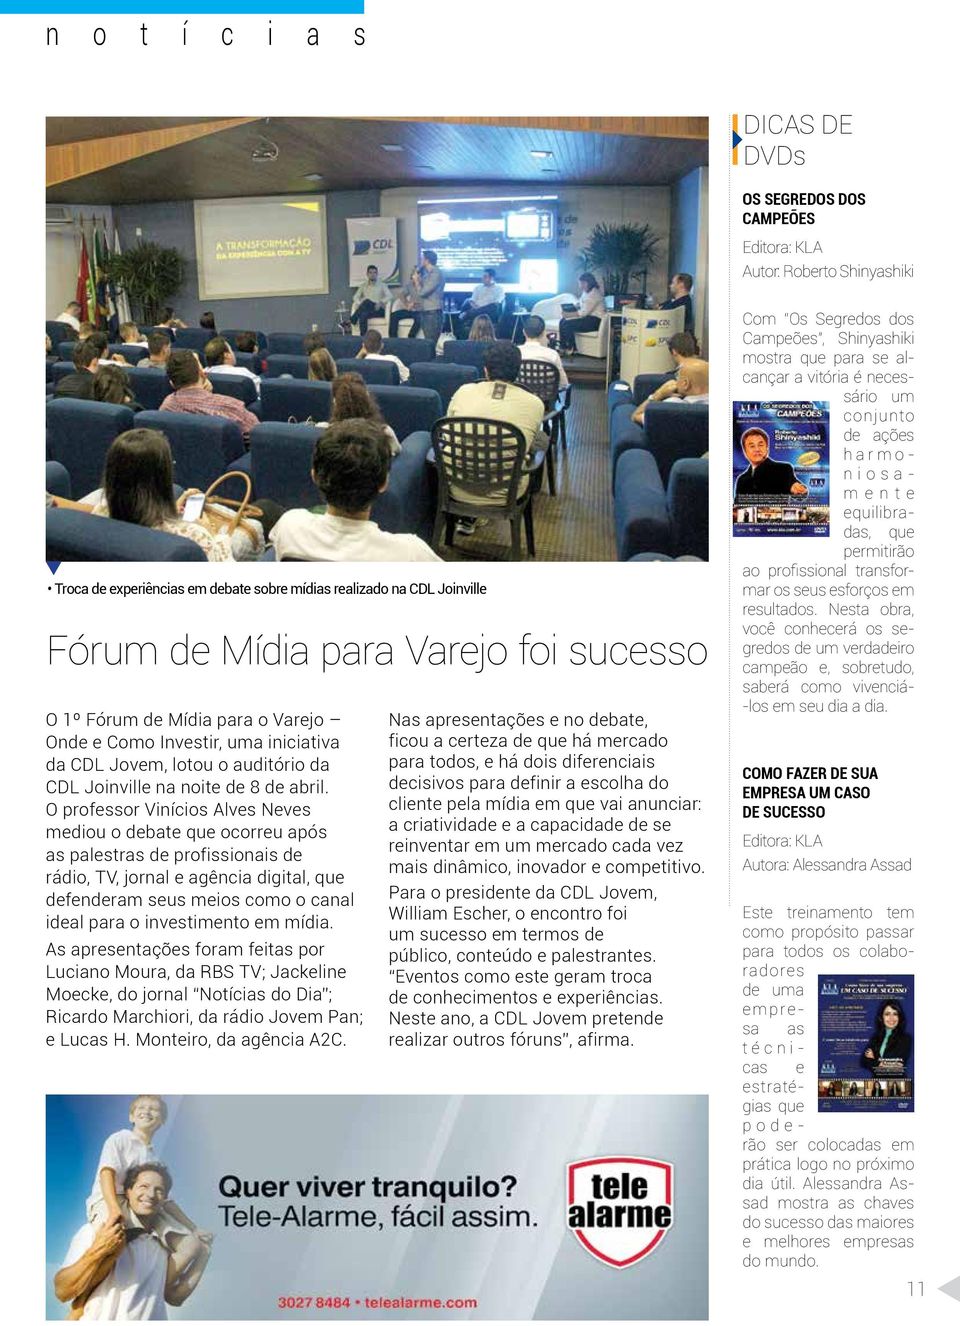 O professor Vinícios Alves Neves mediou o debate que ocorreu após as palestras de profissionais de rádio, TV, jornal e agência digital, que defenderam seus meios como o canal ideal para o